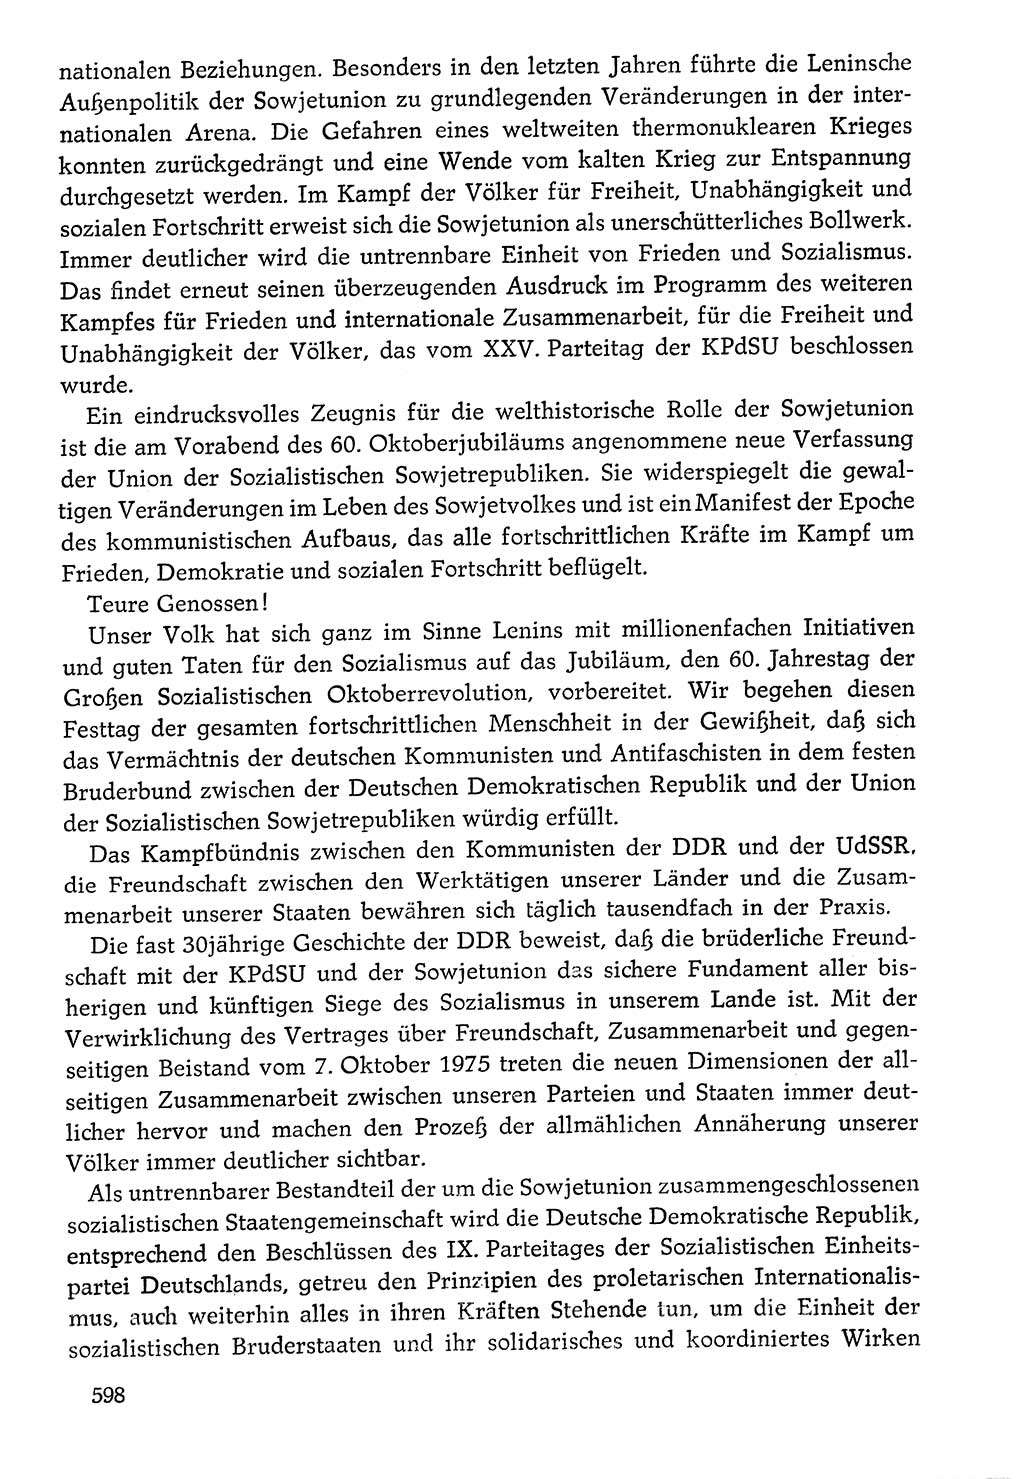 Dokumente der Sozialistischen Einheitspartei Deutschlands (SED) [Deutsche Demokratische Republik (DDR)] 1976-1977, Seite 598 (Dok. SED DDR 1976-1977, S. 598)